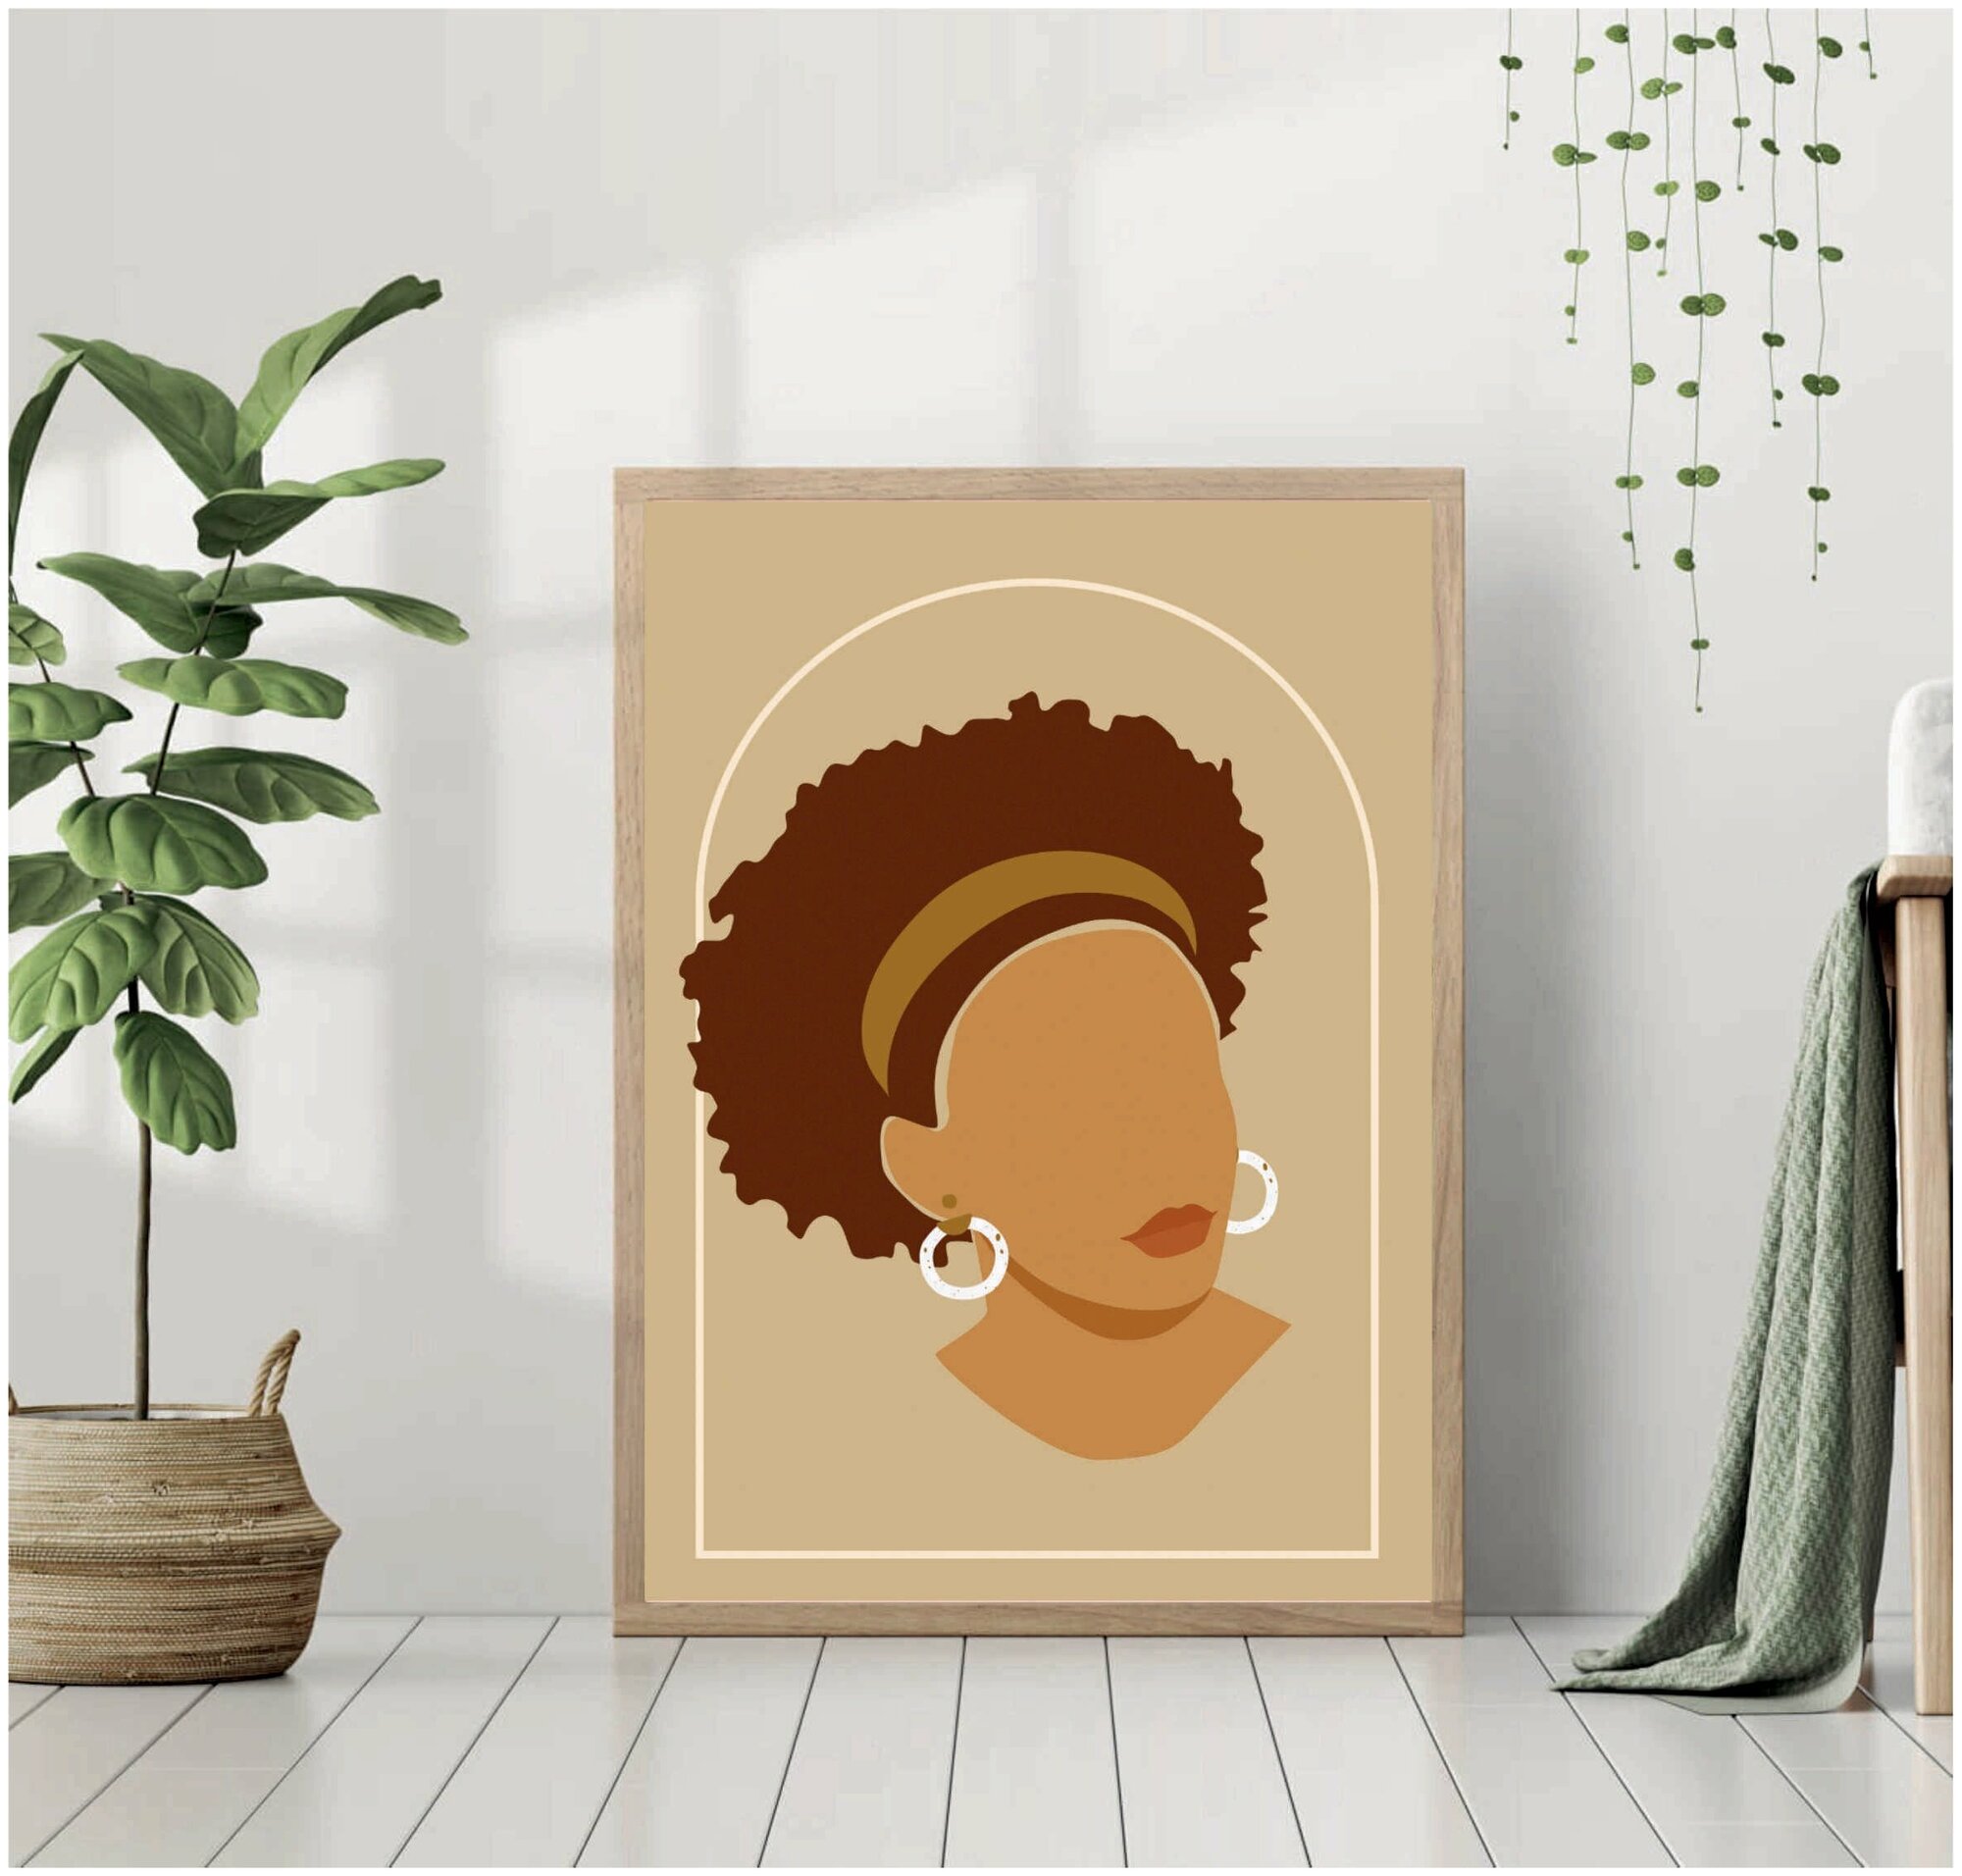 Постер без рамки "Лицо африканской женщины с повязкой на голове. Минимализм. Стиль бохо" 30*40 в тубусе / Картина для интерьера